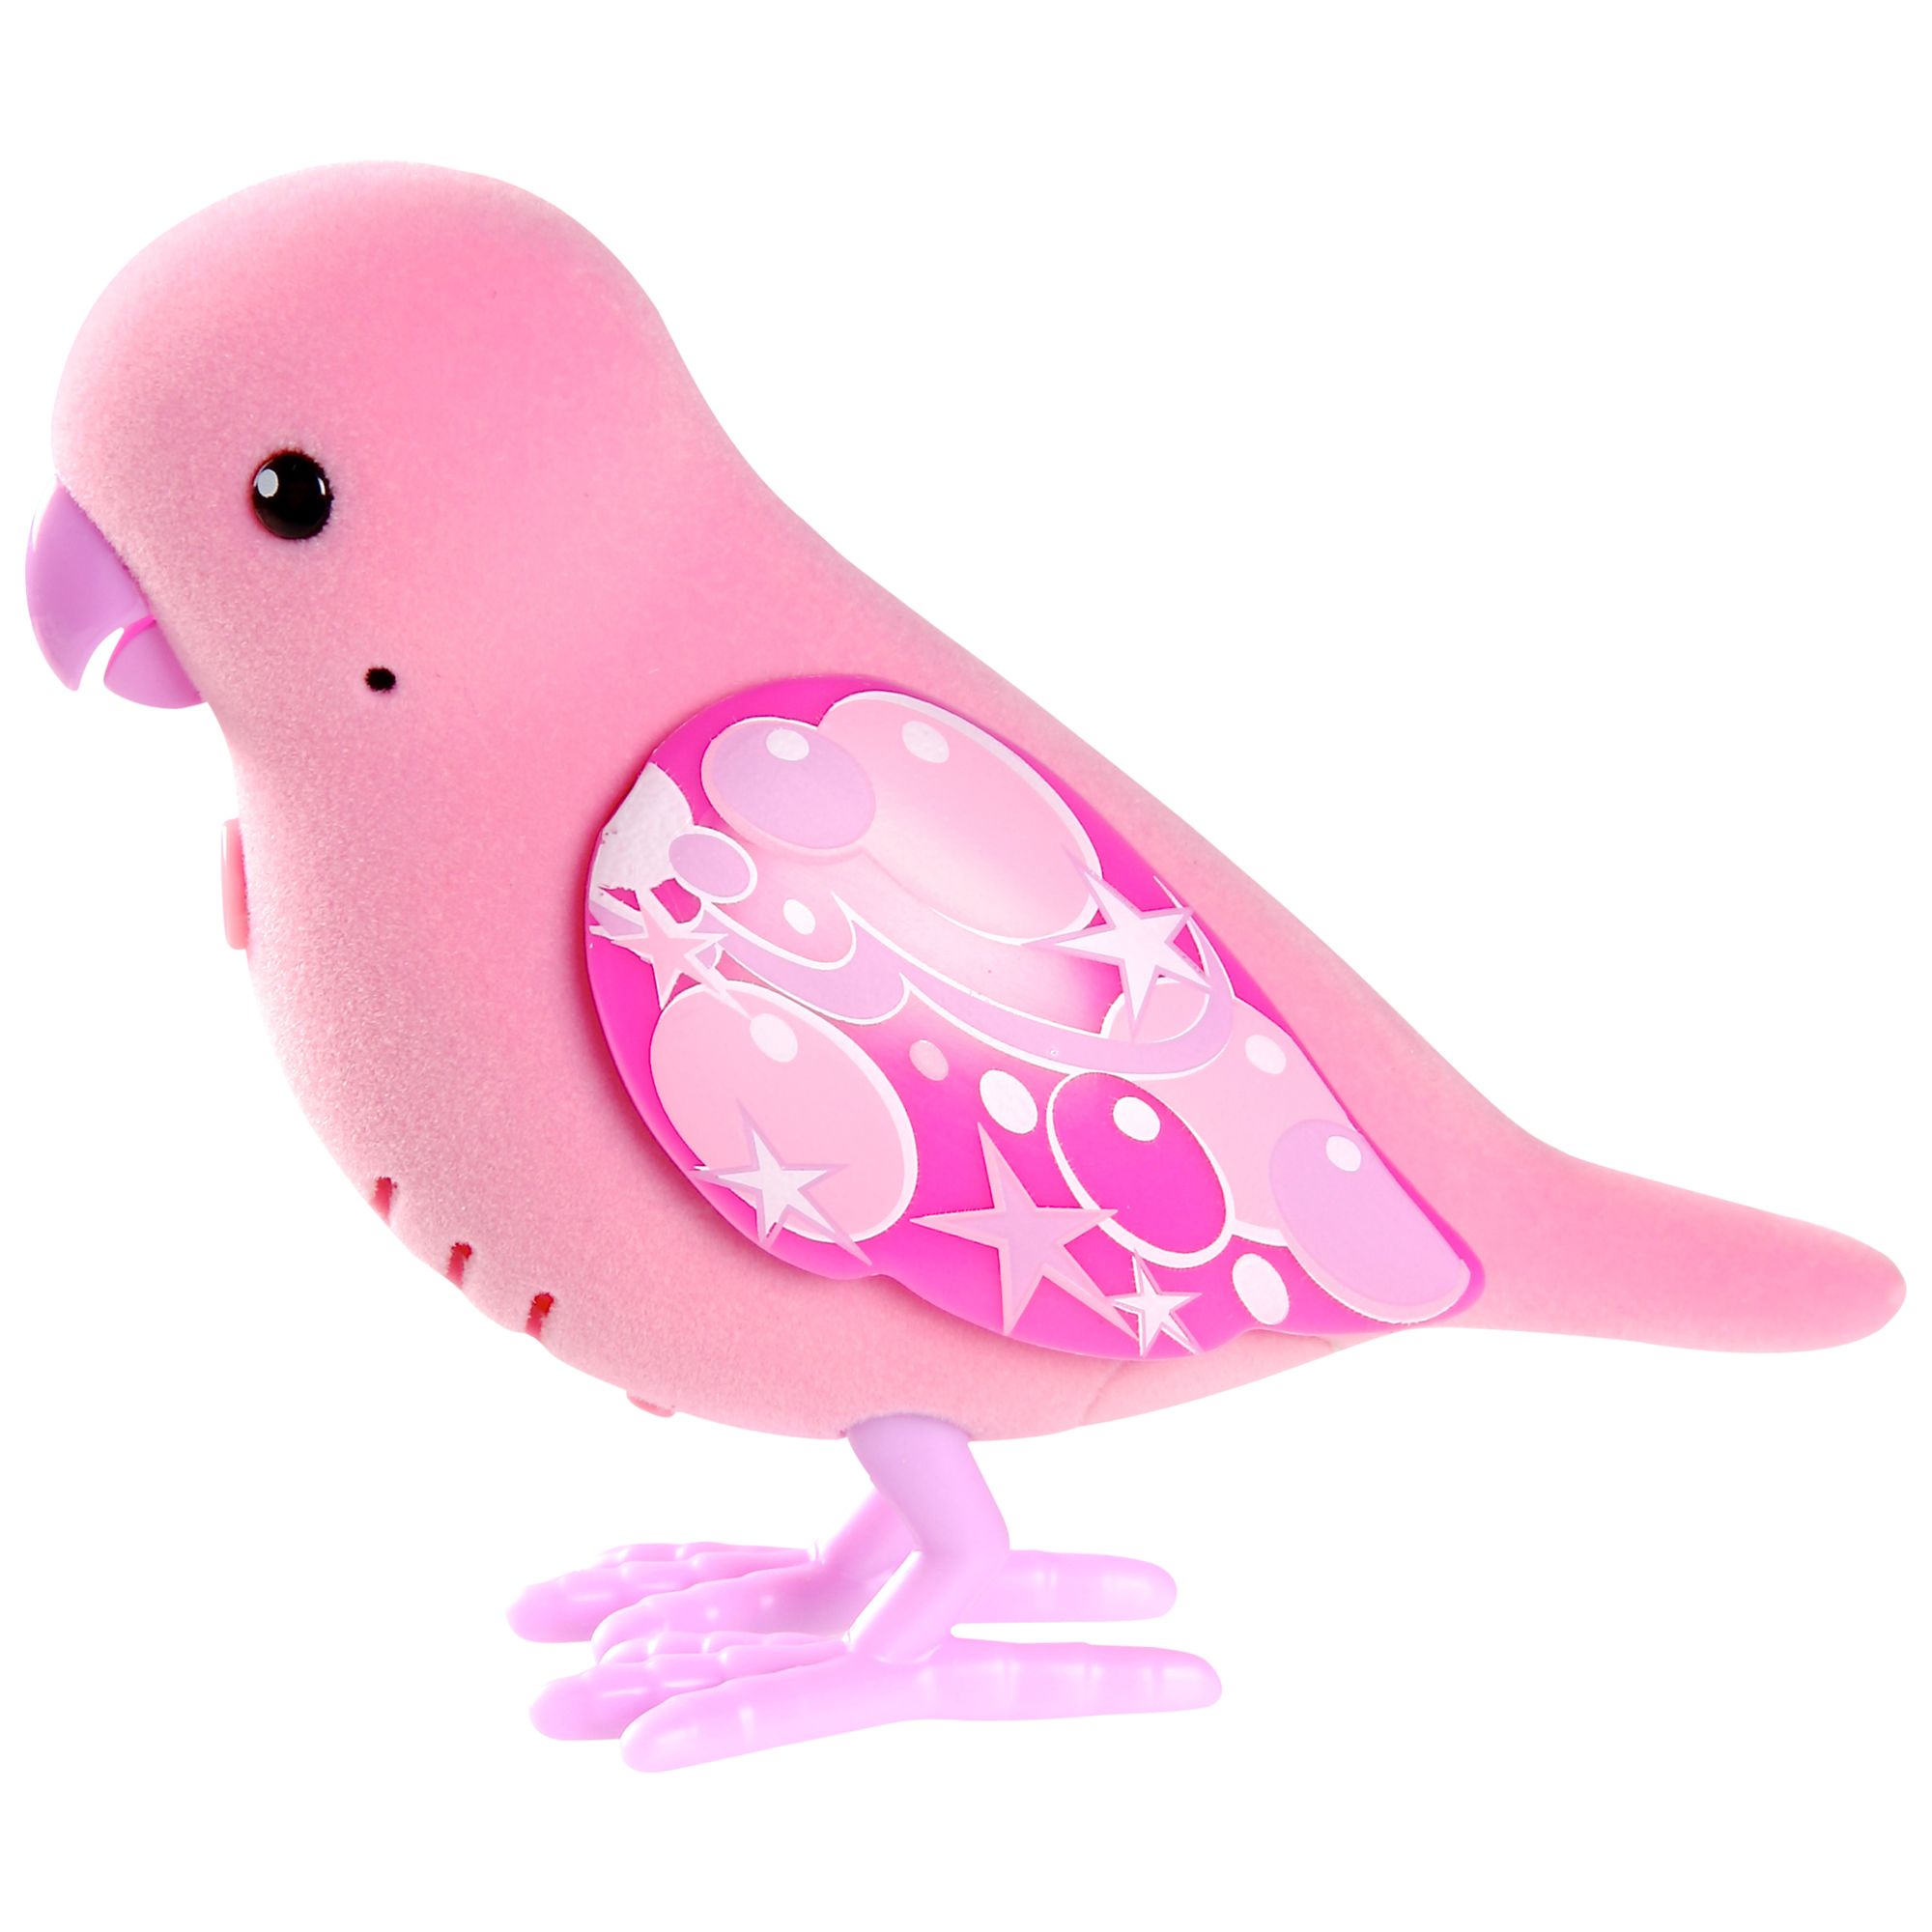 Pink pets. Игрушка птицы для девочек. Little Birds игрушки. Little Live Pets. Игрушечные птички говорящие.